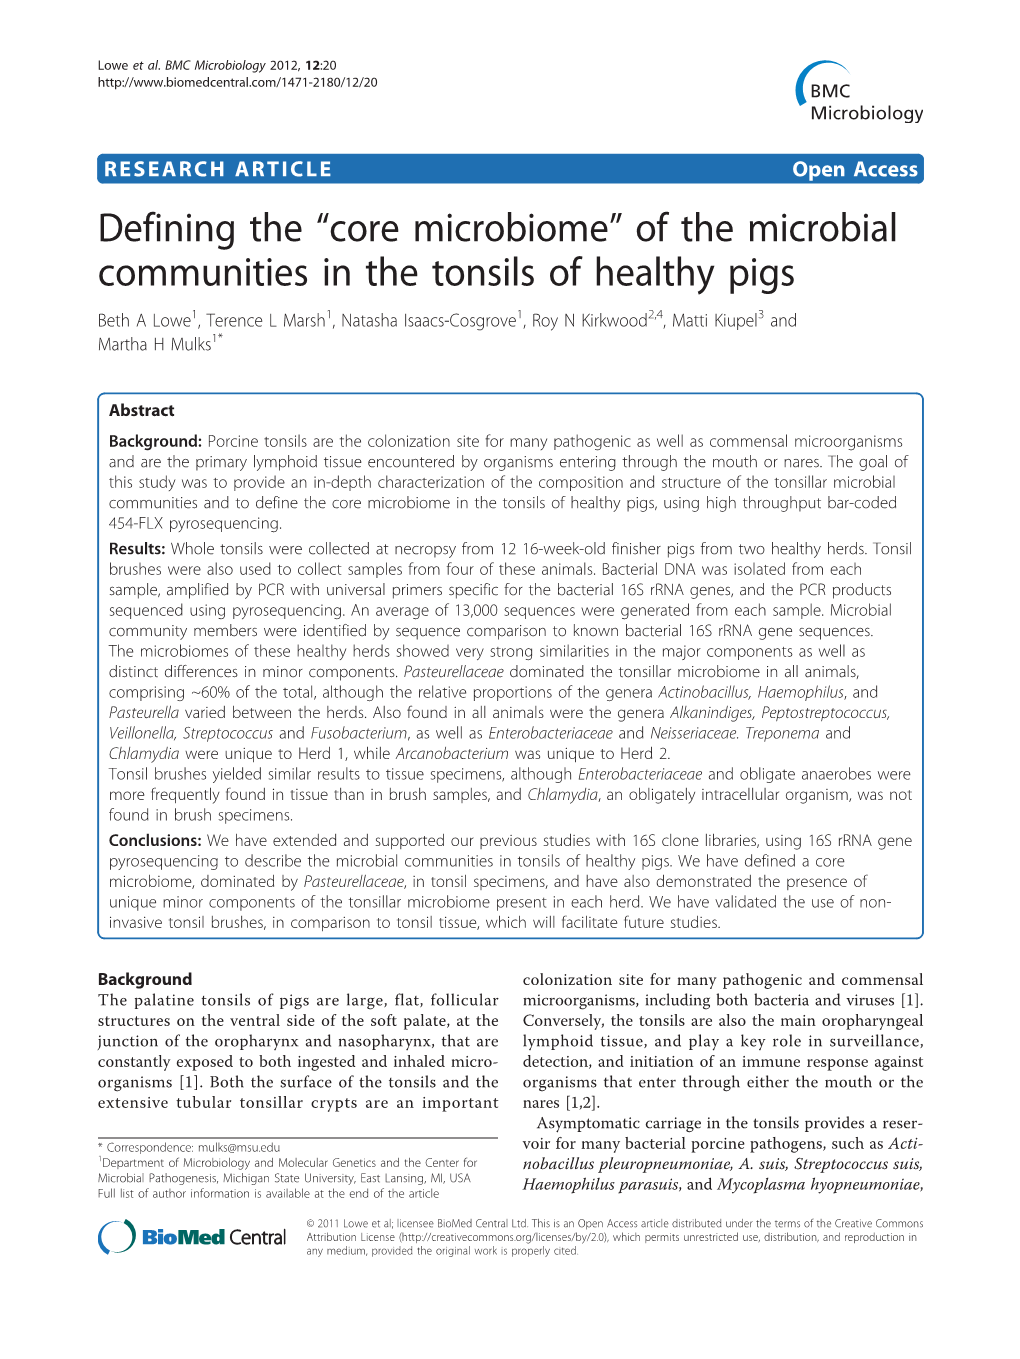 Core Microbiome